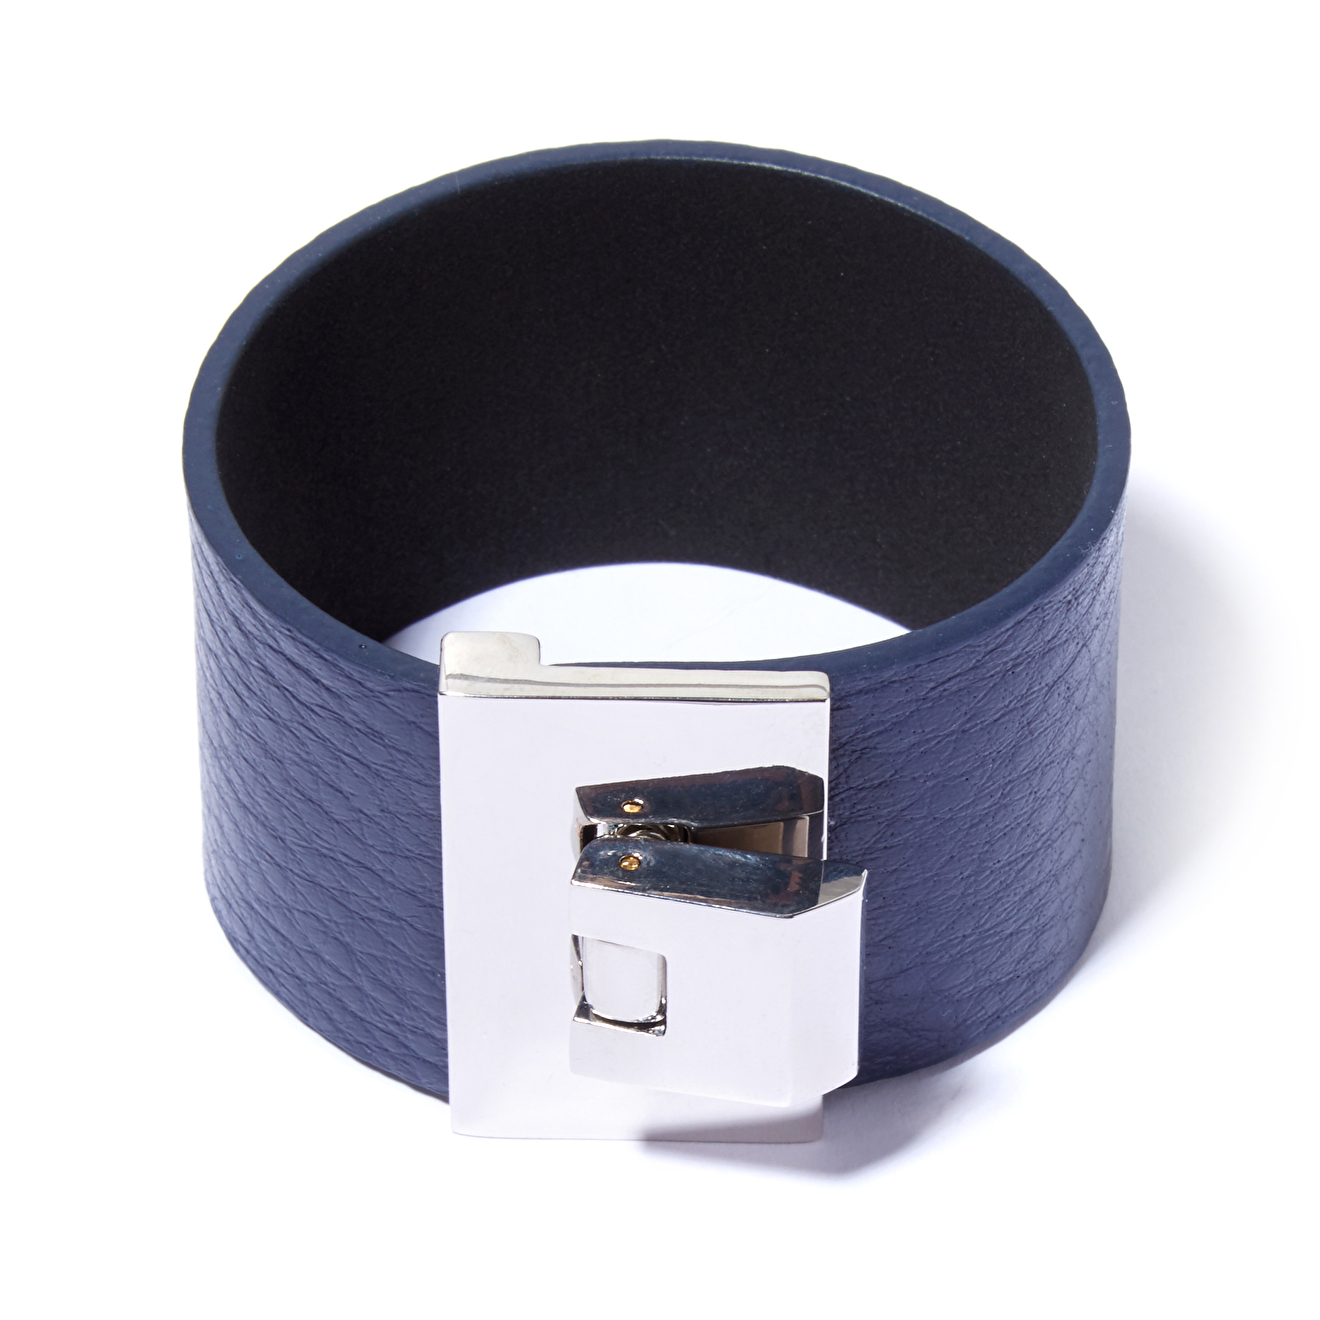 Tannum Синий кожаный браслет с металлическим замком цена и фото